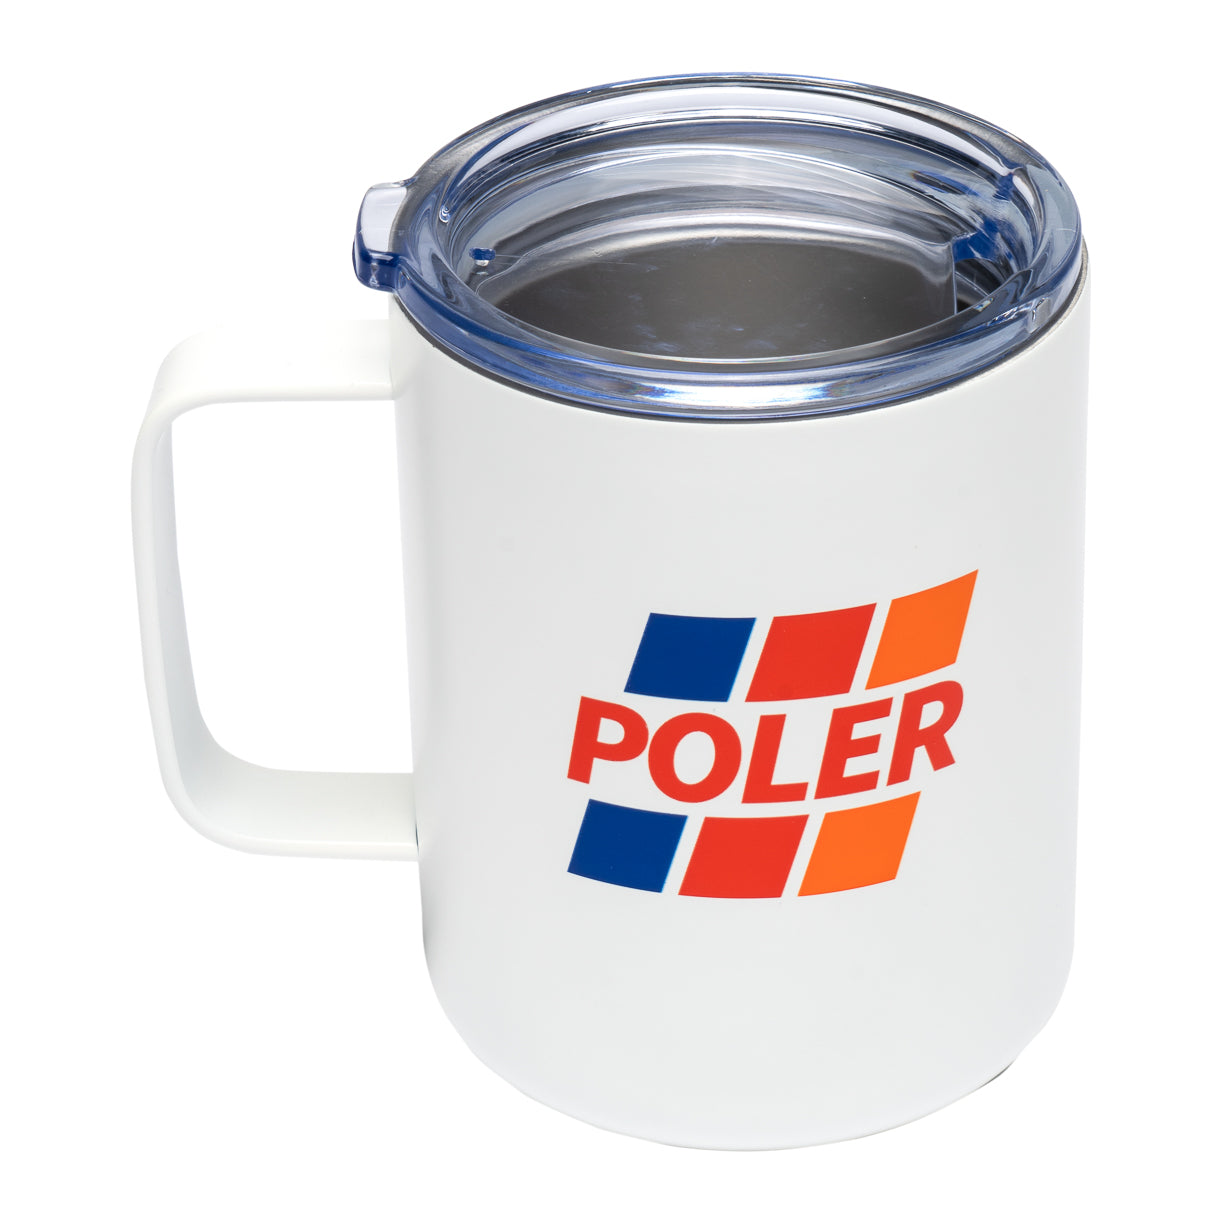 Poler Insulated Mug